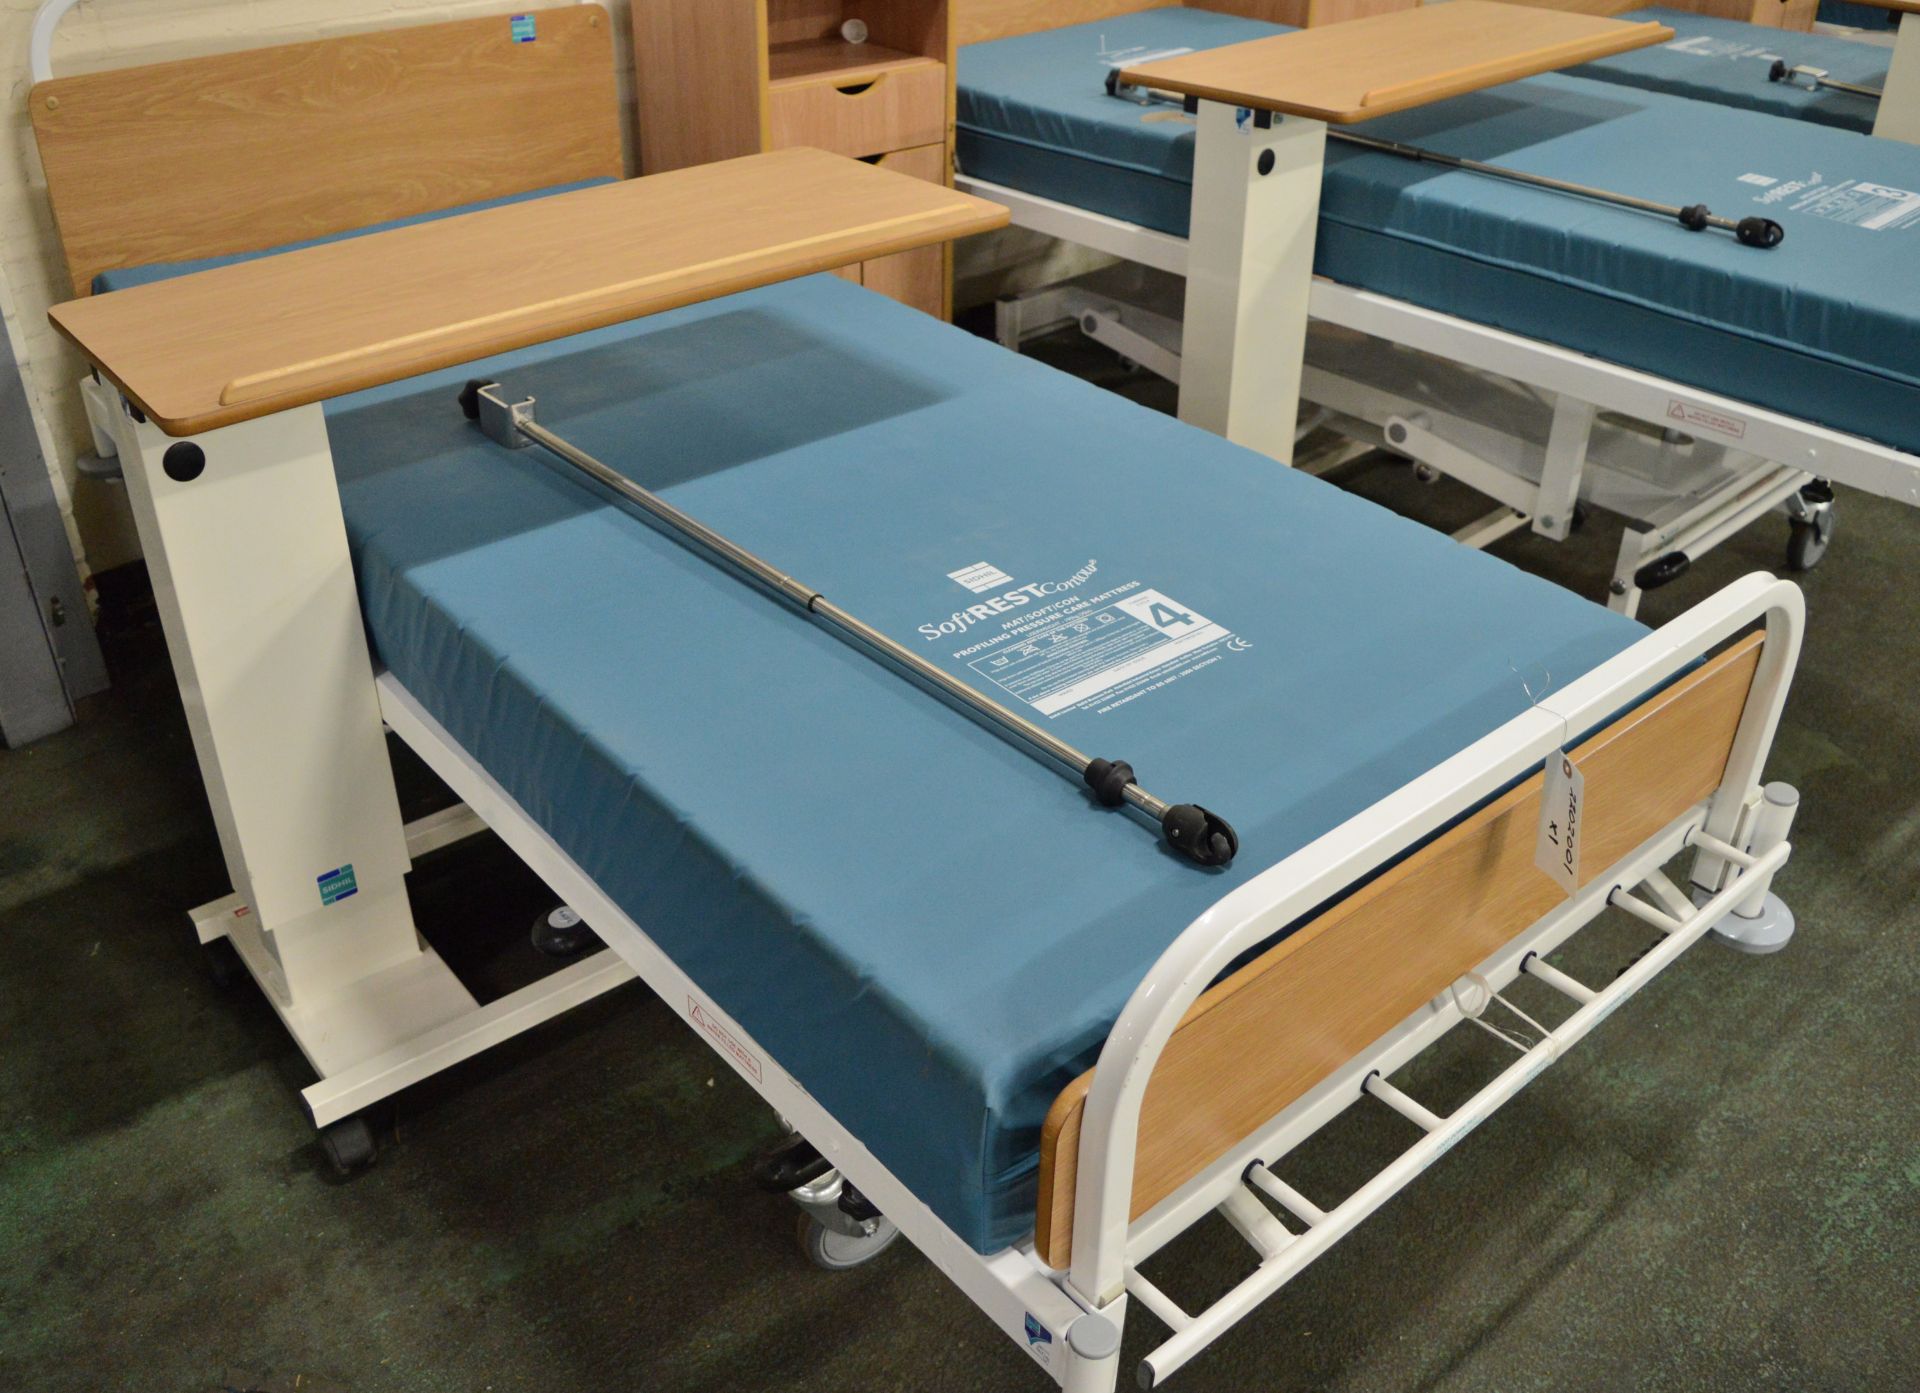 2x Hospital Bed & Furniture Sets. - Image 2 of 3